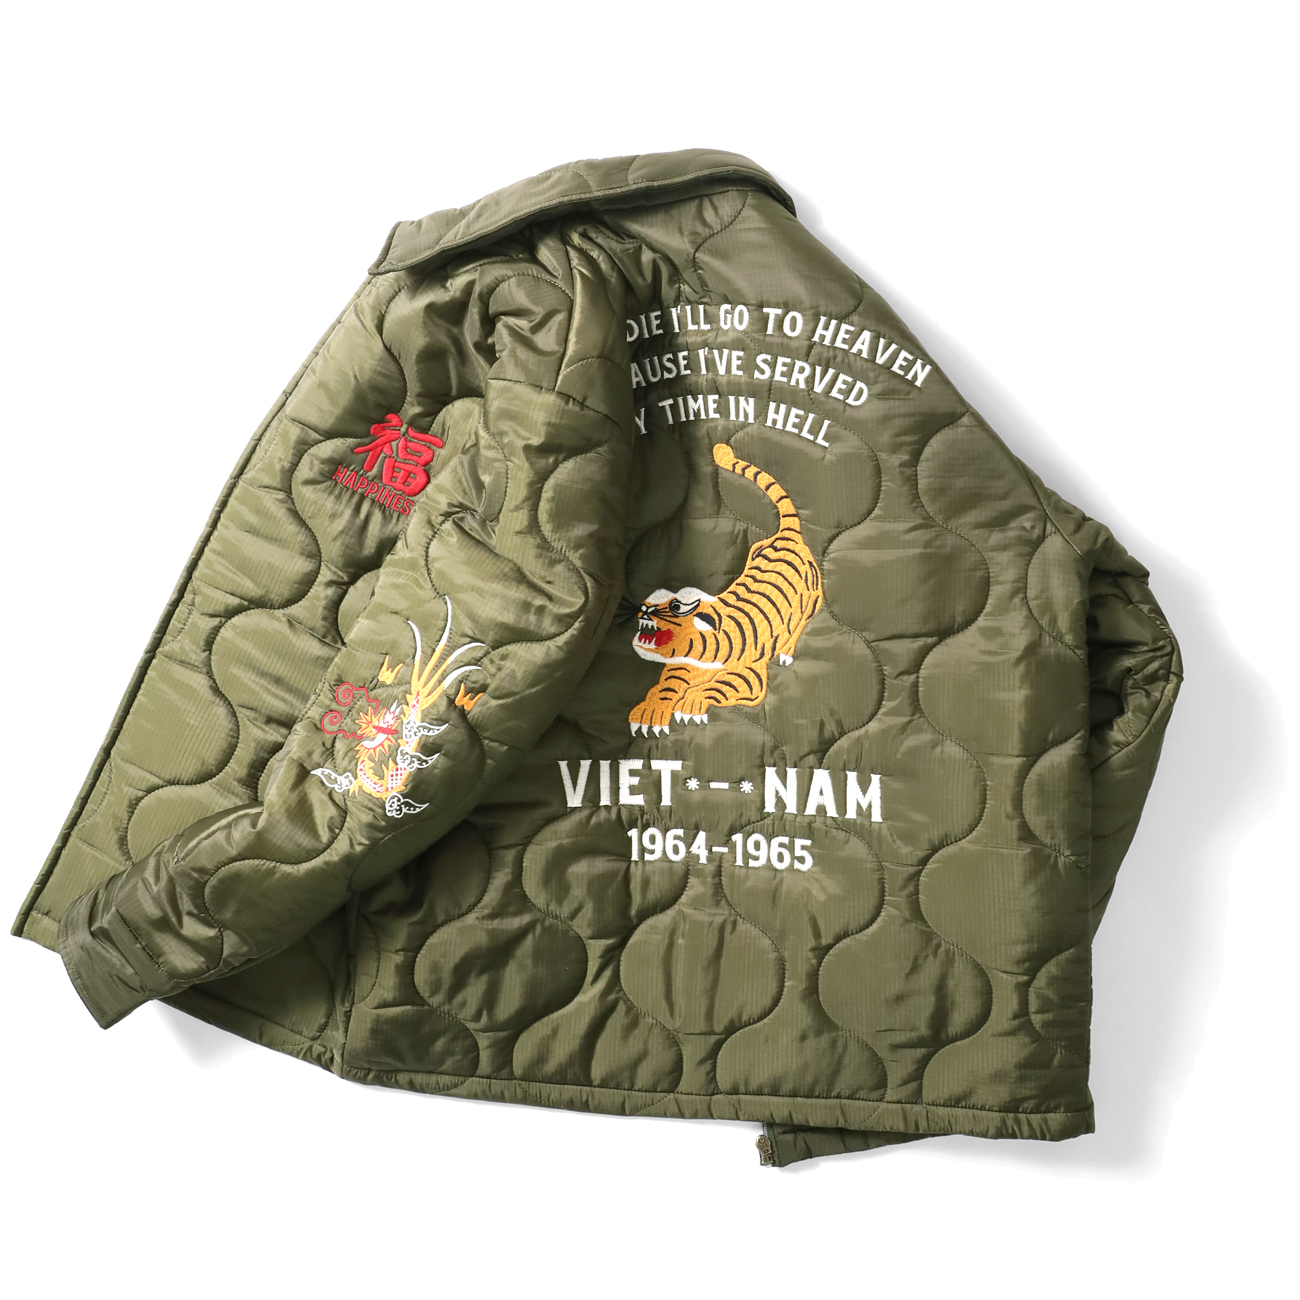 コットン製も良いけれど、キルティング製の『ベトナムジャケット